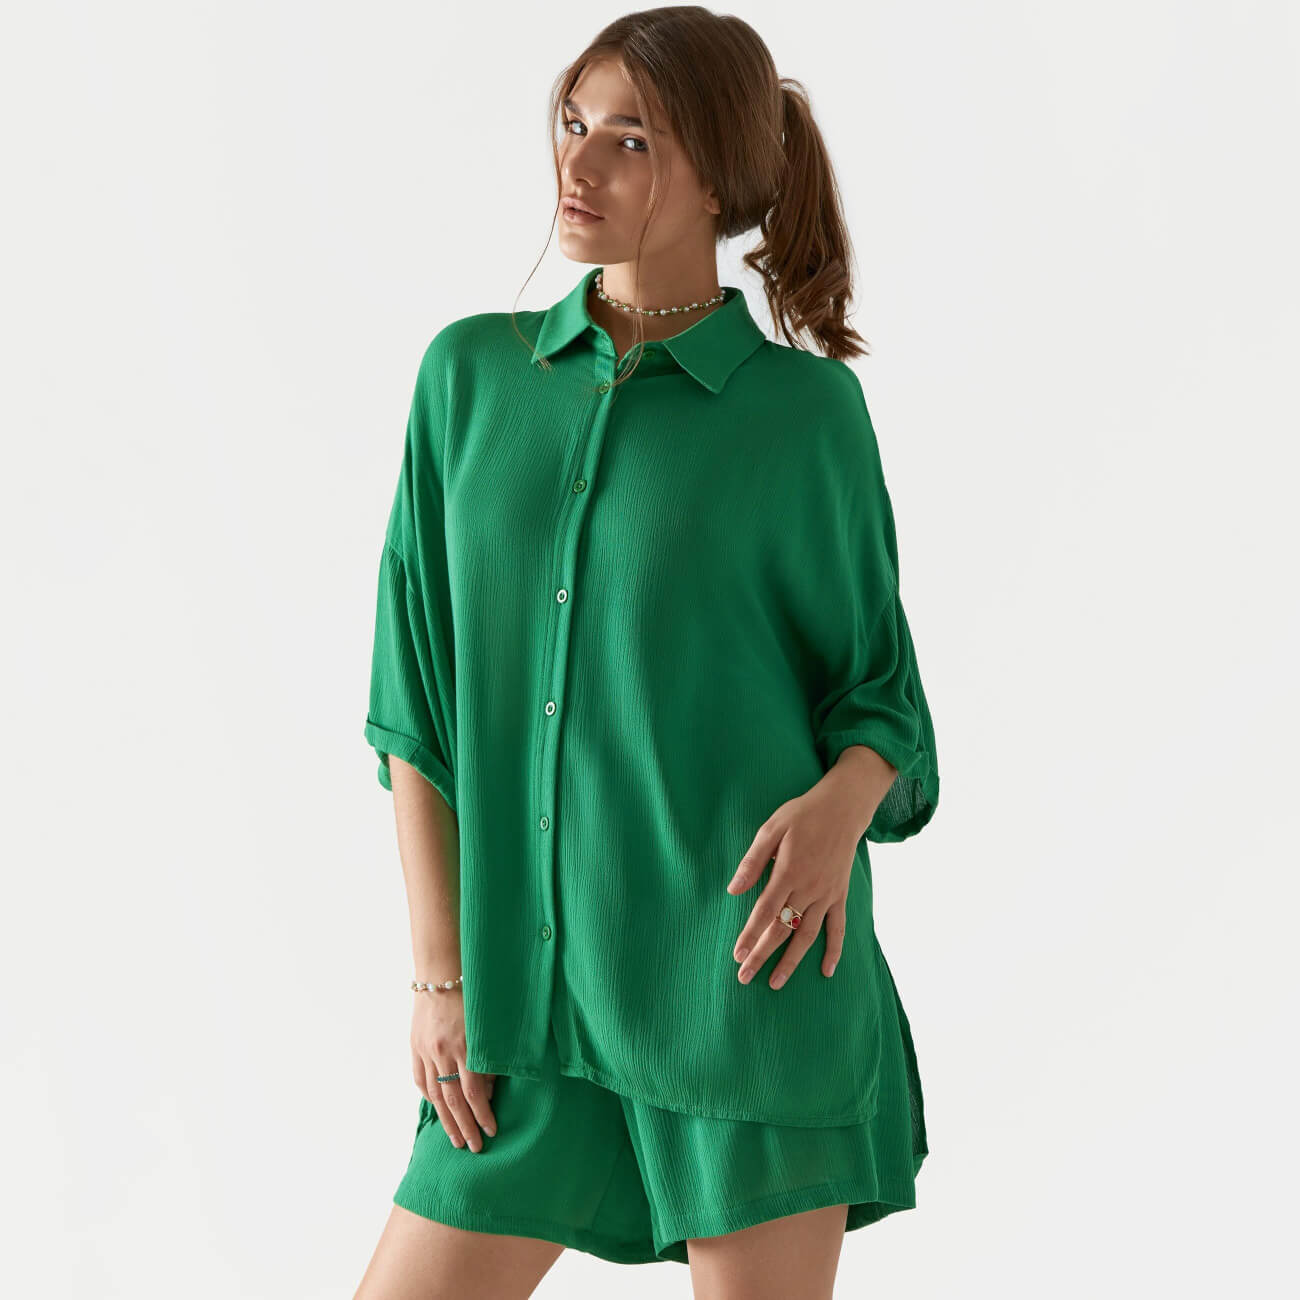 Рубашка женская, р. S, с коротким рукавом, вискоза, зеленая, Julie боди детское с коротким рукавом горошинка рост 92 см молочный персиковый 2 шт